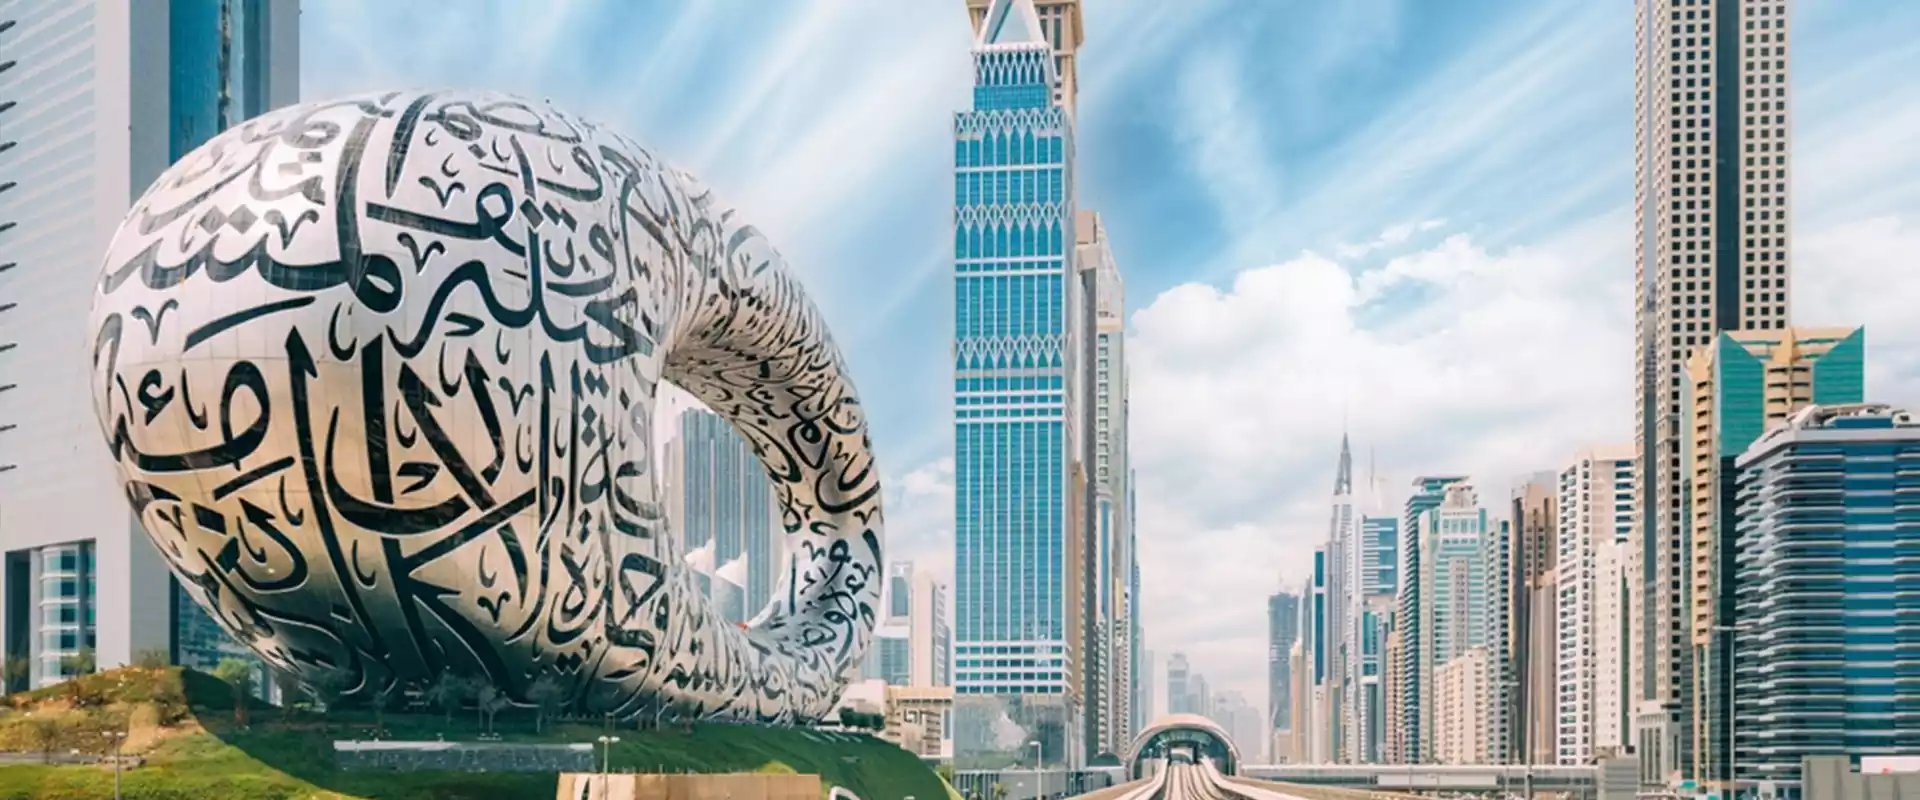 شركة Building Rank فرع الإمارات العربية المتحدة - شركة بلدنغ رانك - بلدنك رانك - بلدنق رانك - بلدنج رانك